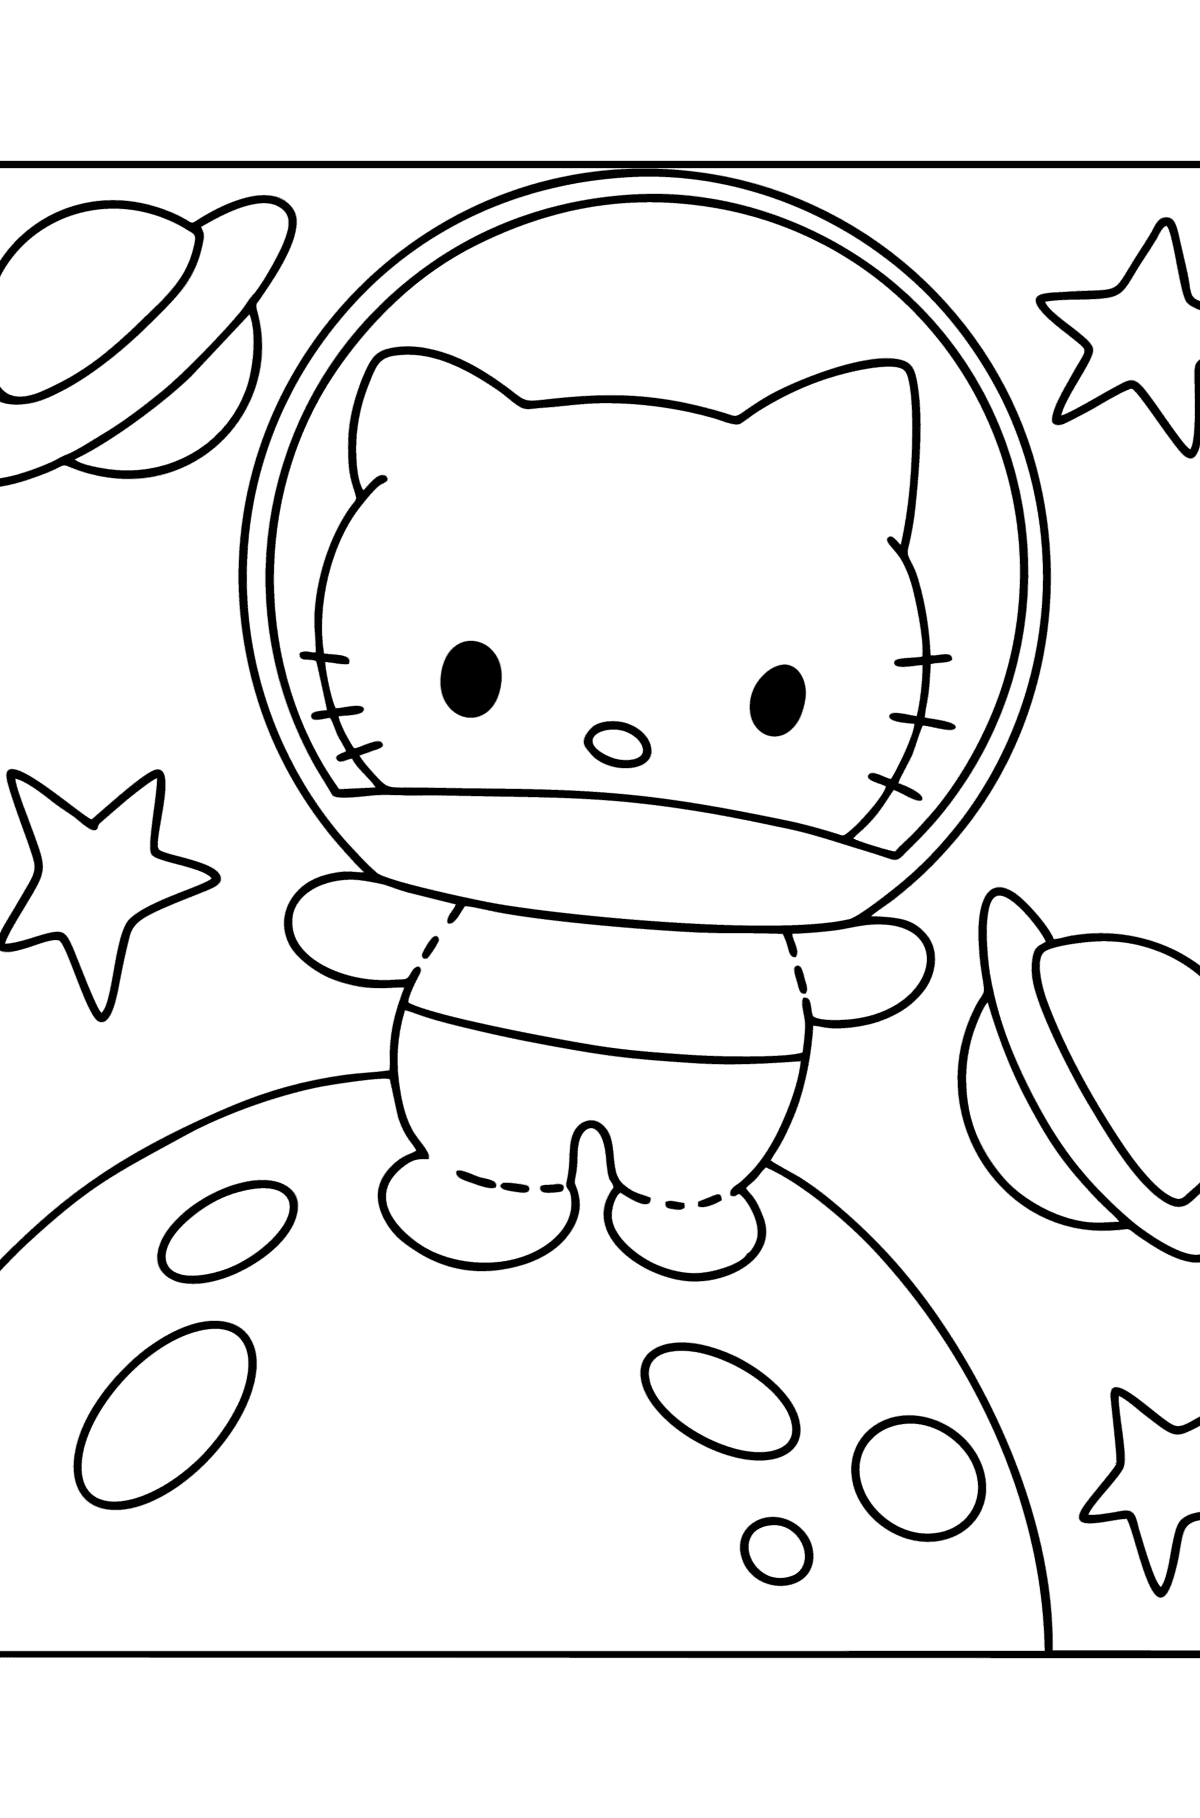 Ausmalbild Hello Kitty Astronaut - Malvorlagen für Kinder